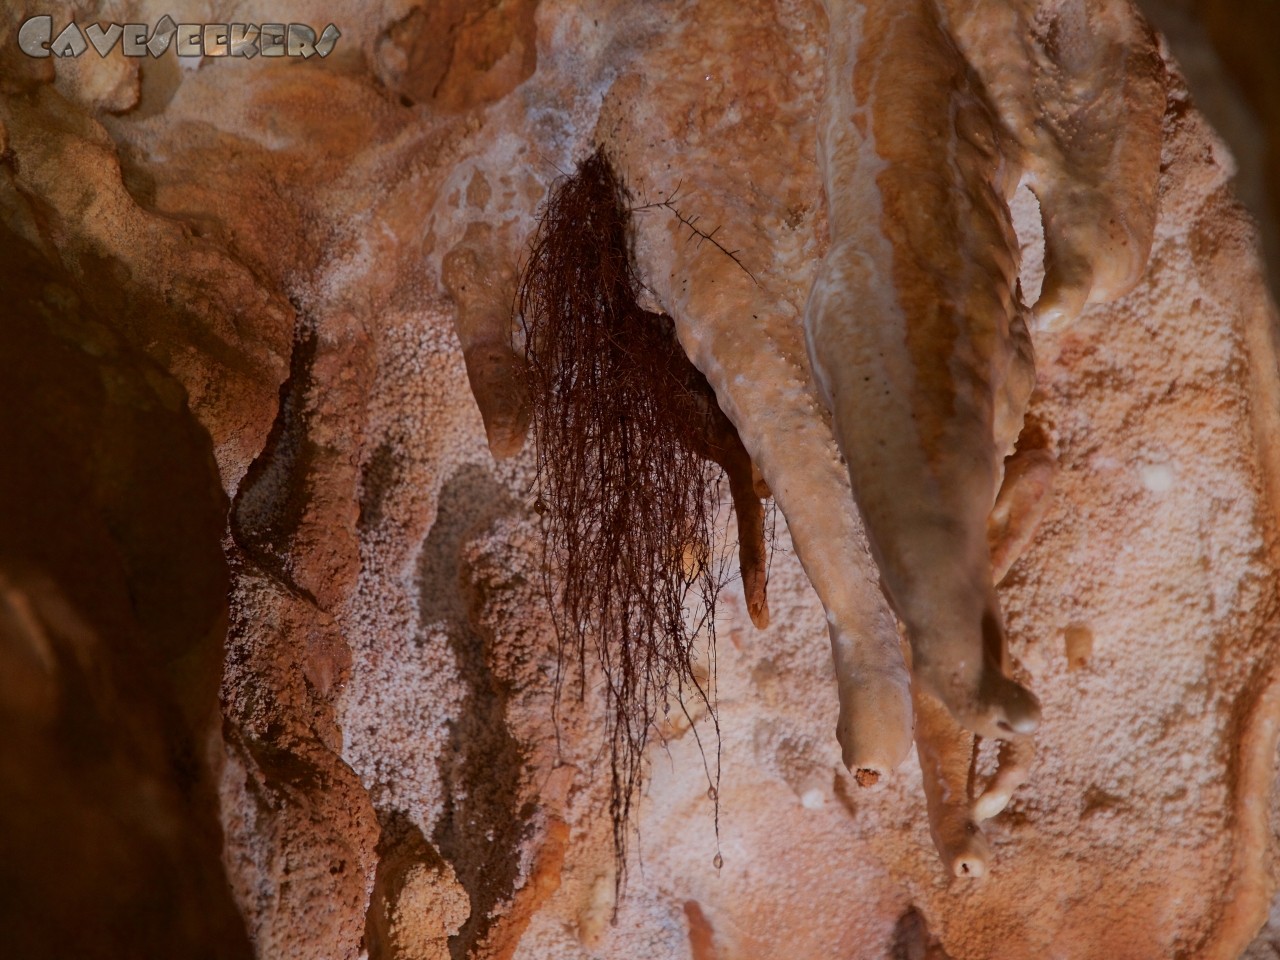 Trou De Cloture: Woran erkennt der CaveSeeker dass er sich knapp unter der  Oberfläche befindet? An der Wurzel!